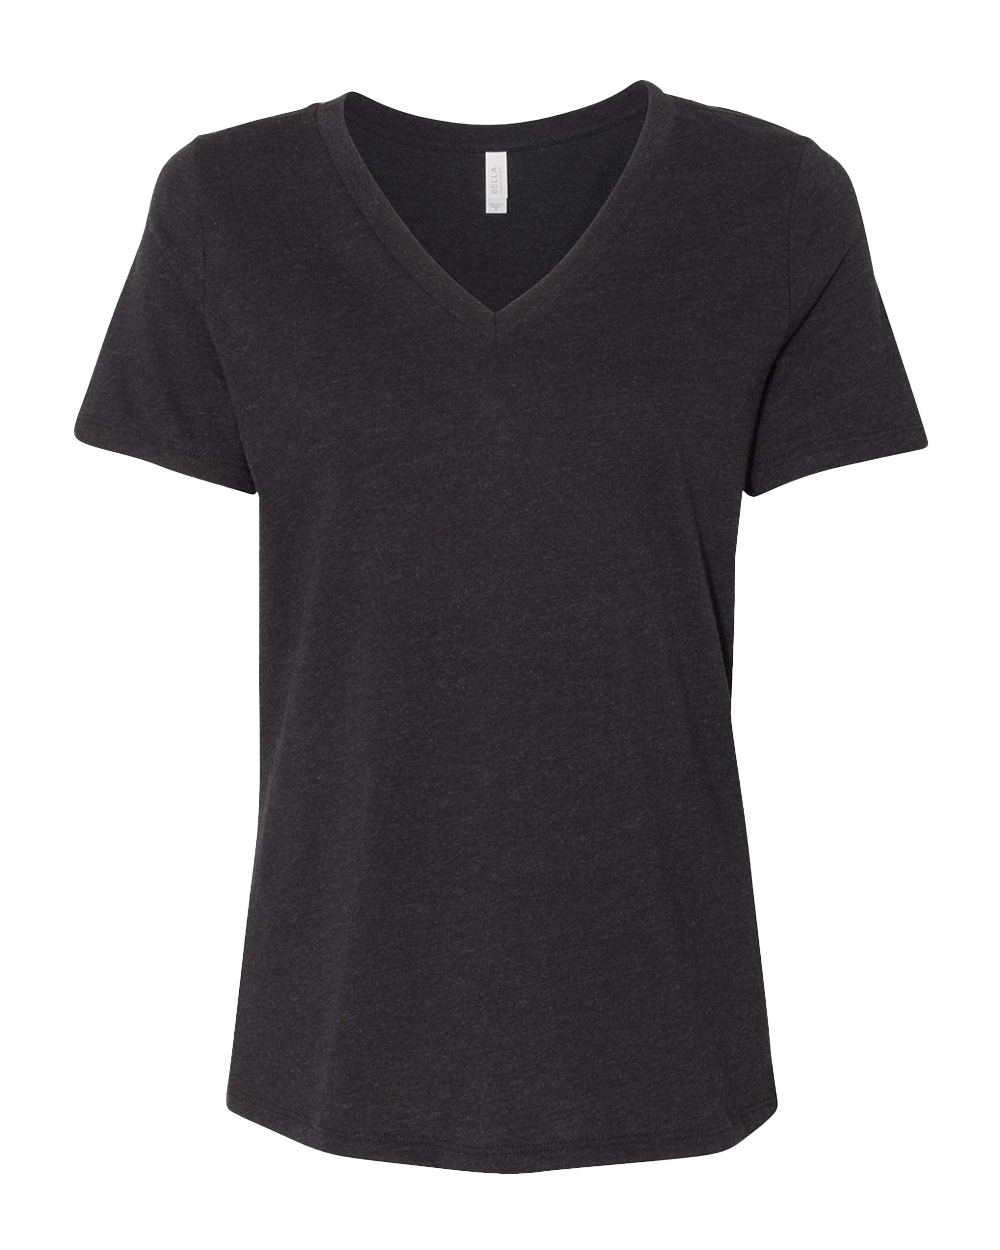 TShirts Home - Tshirt.com